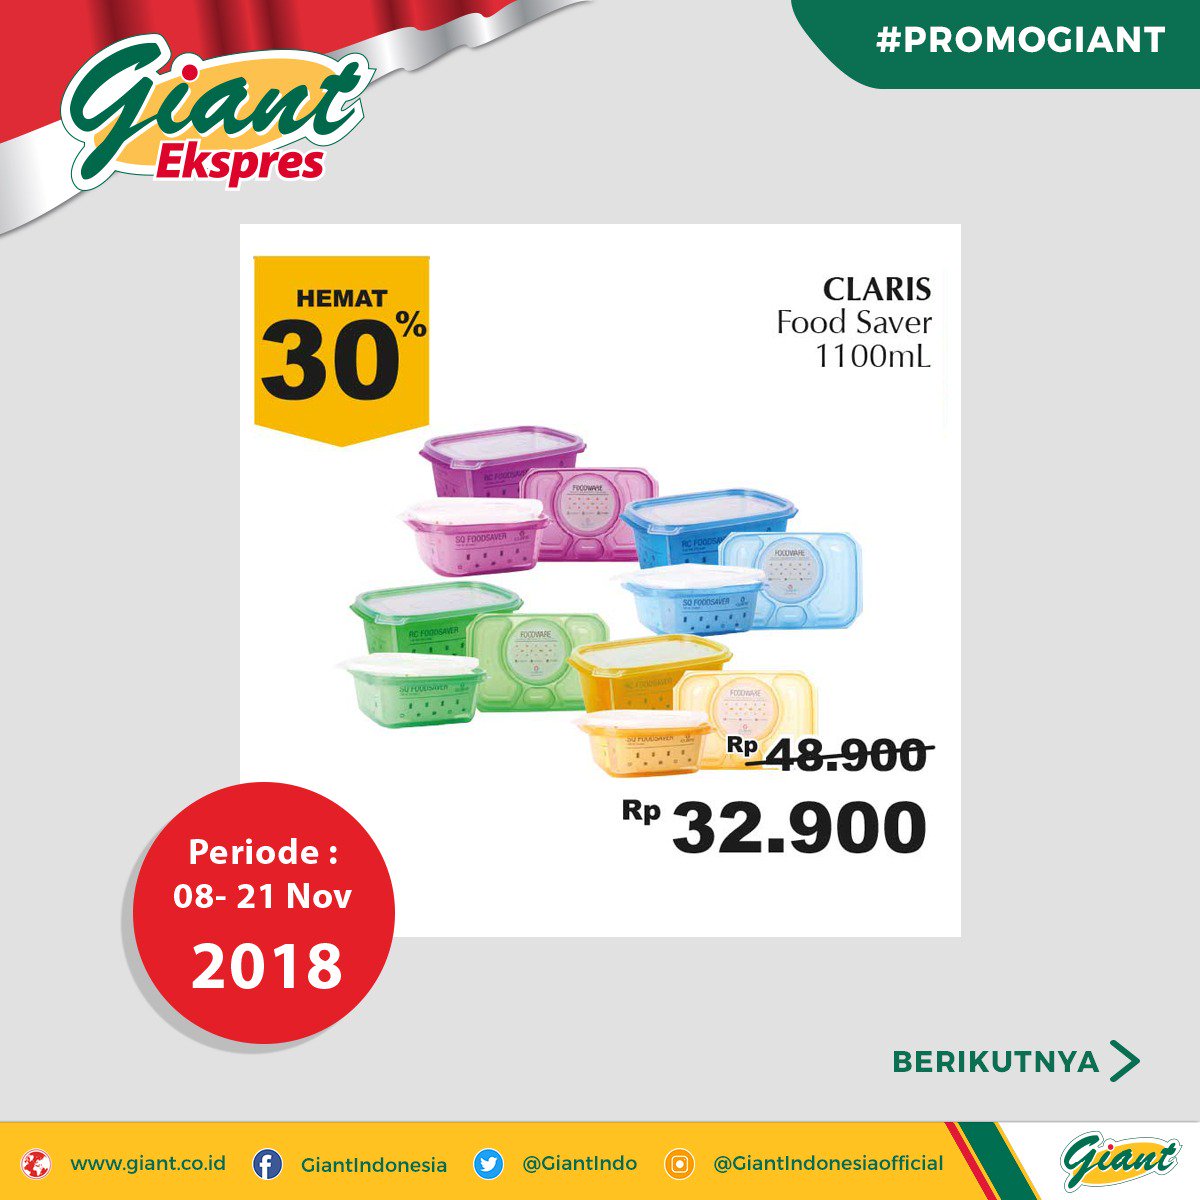 Giant - Promo Giant Periode 08 - 21 Nov 2018